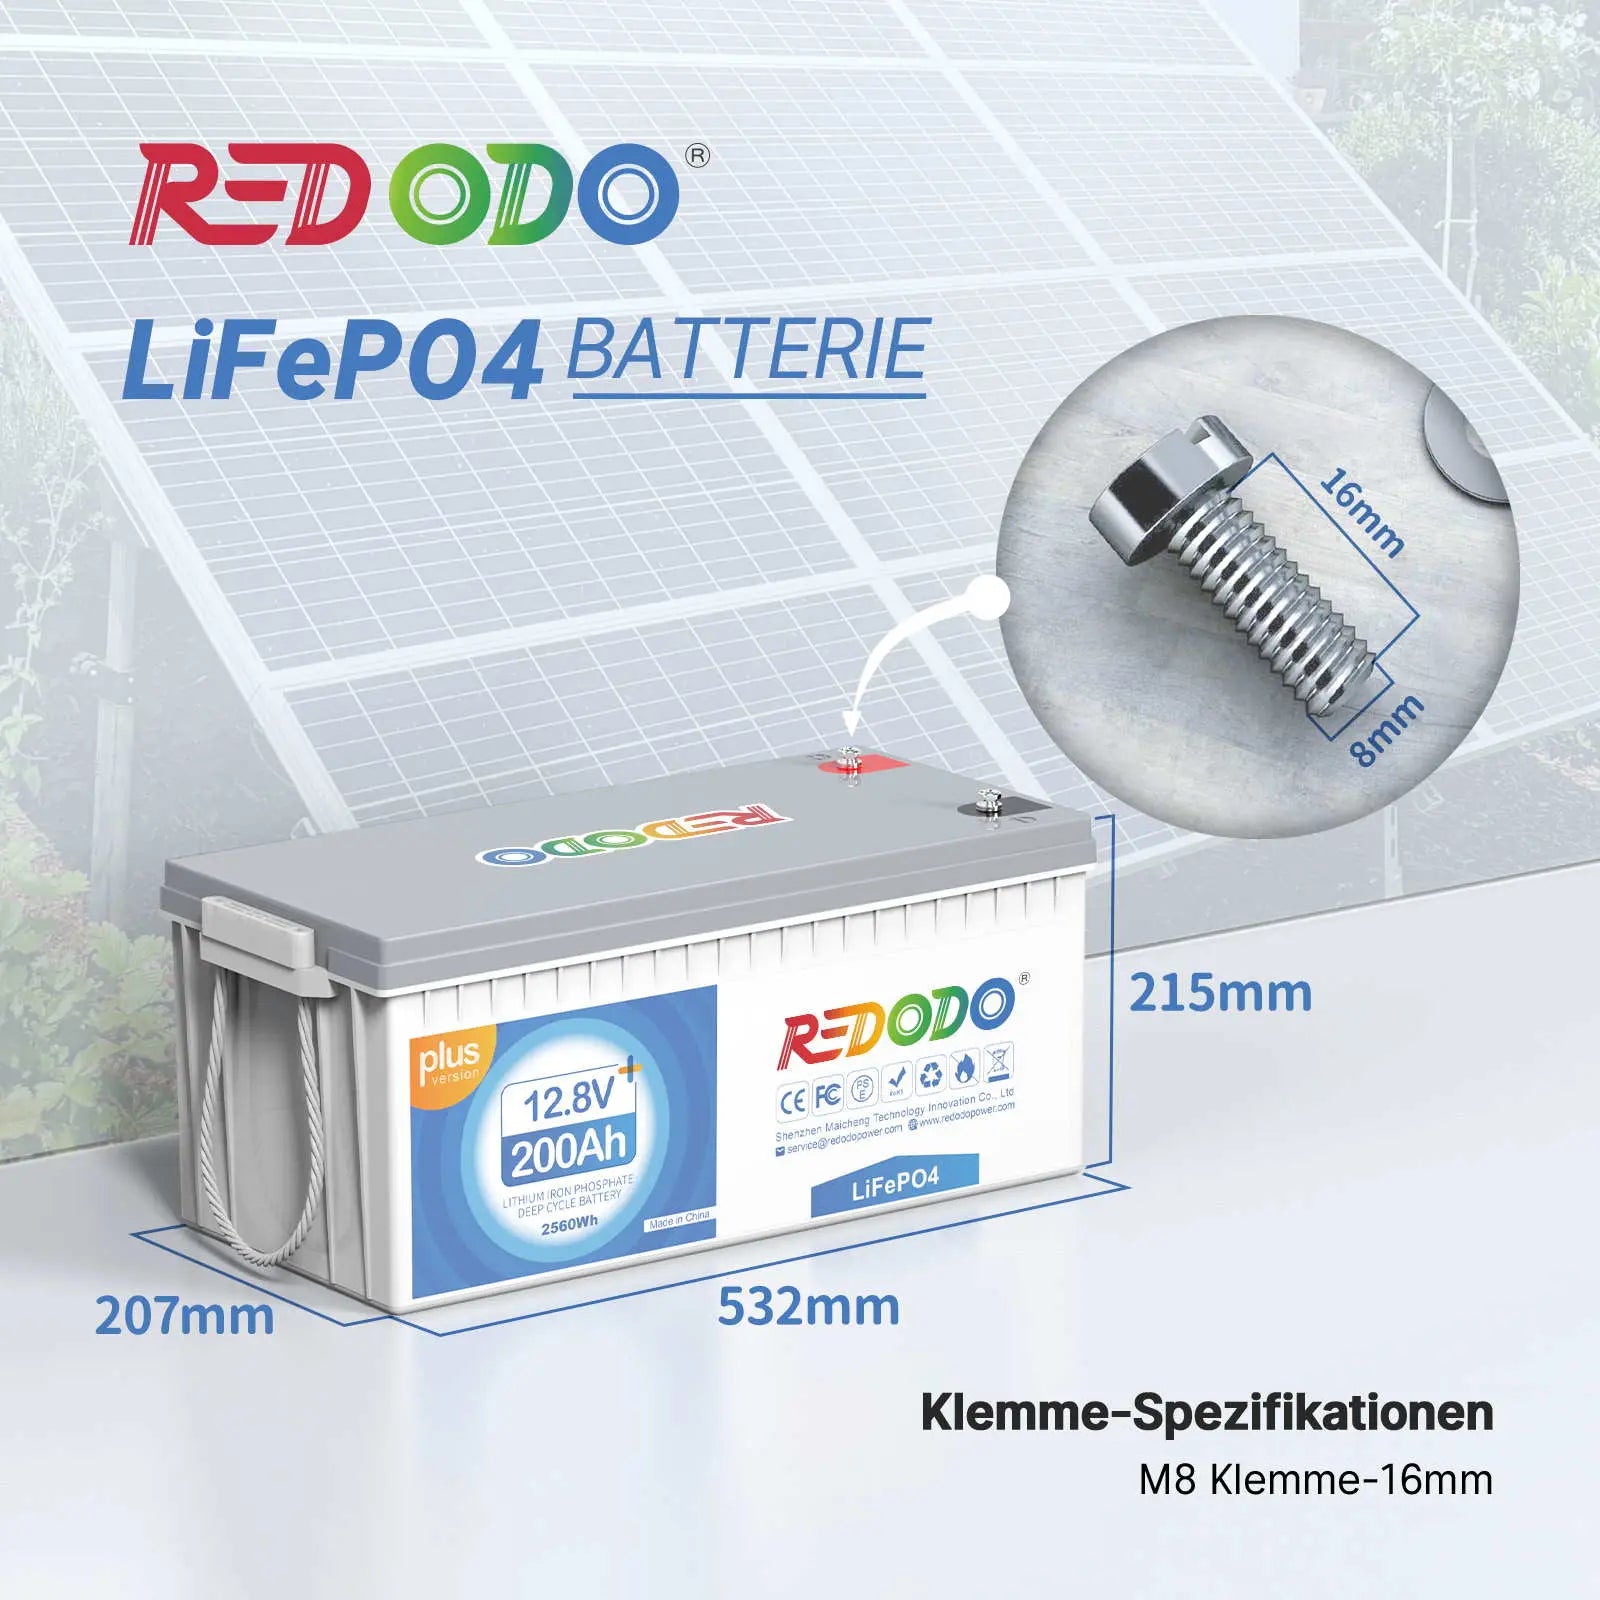 Batería Redodo LiFePO4 200Ah Plus 12V | 2,56kWh y 2,56kW